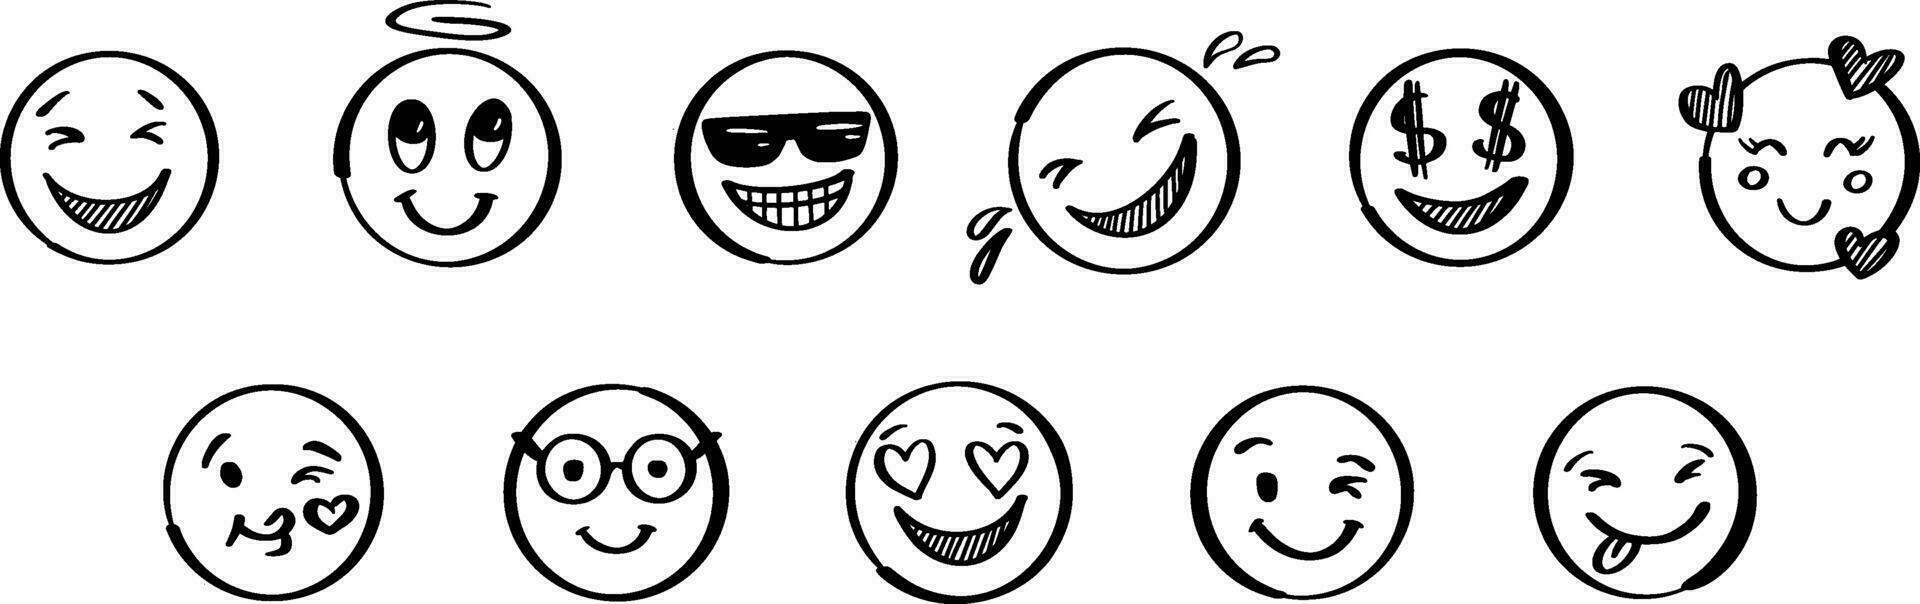 scarabocchio positivo emoji impostare. mano disegnato schizzo vettore illustrazione. imballare di diverso espressioni emoticon.